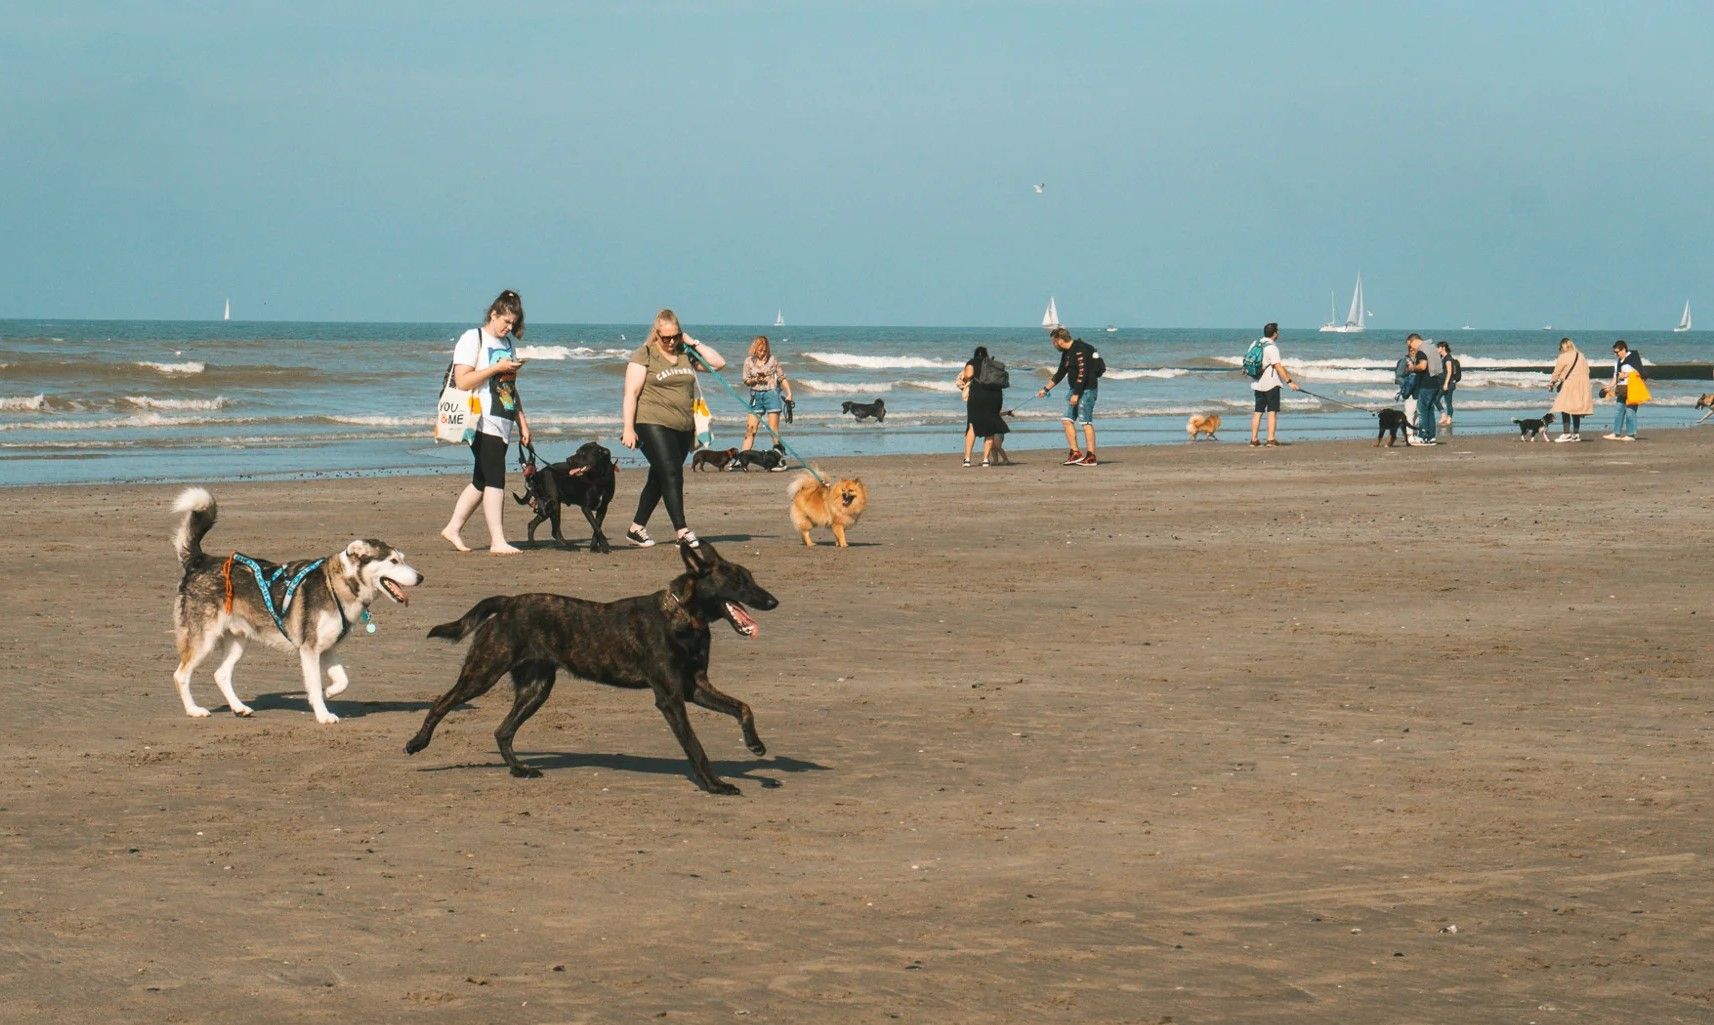 Hondenfestival aan zee laat staarten kwispelen en harten smelten